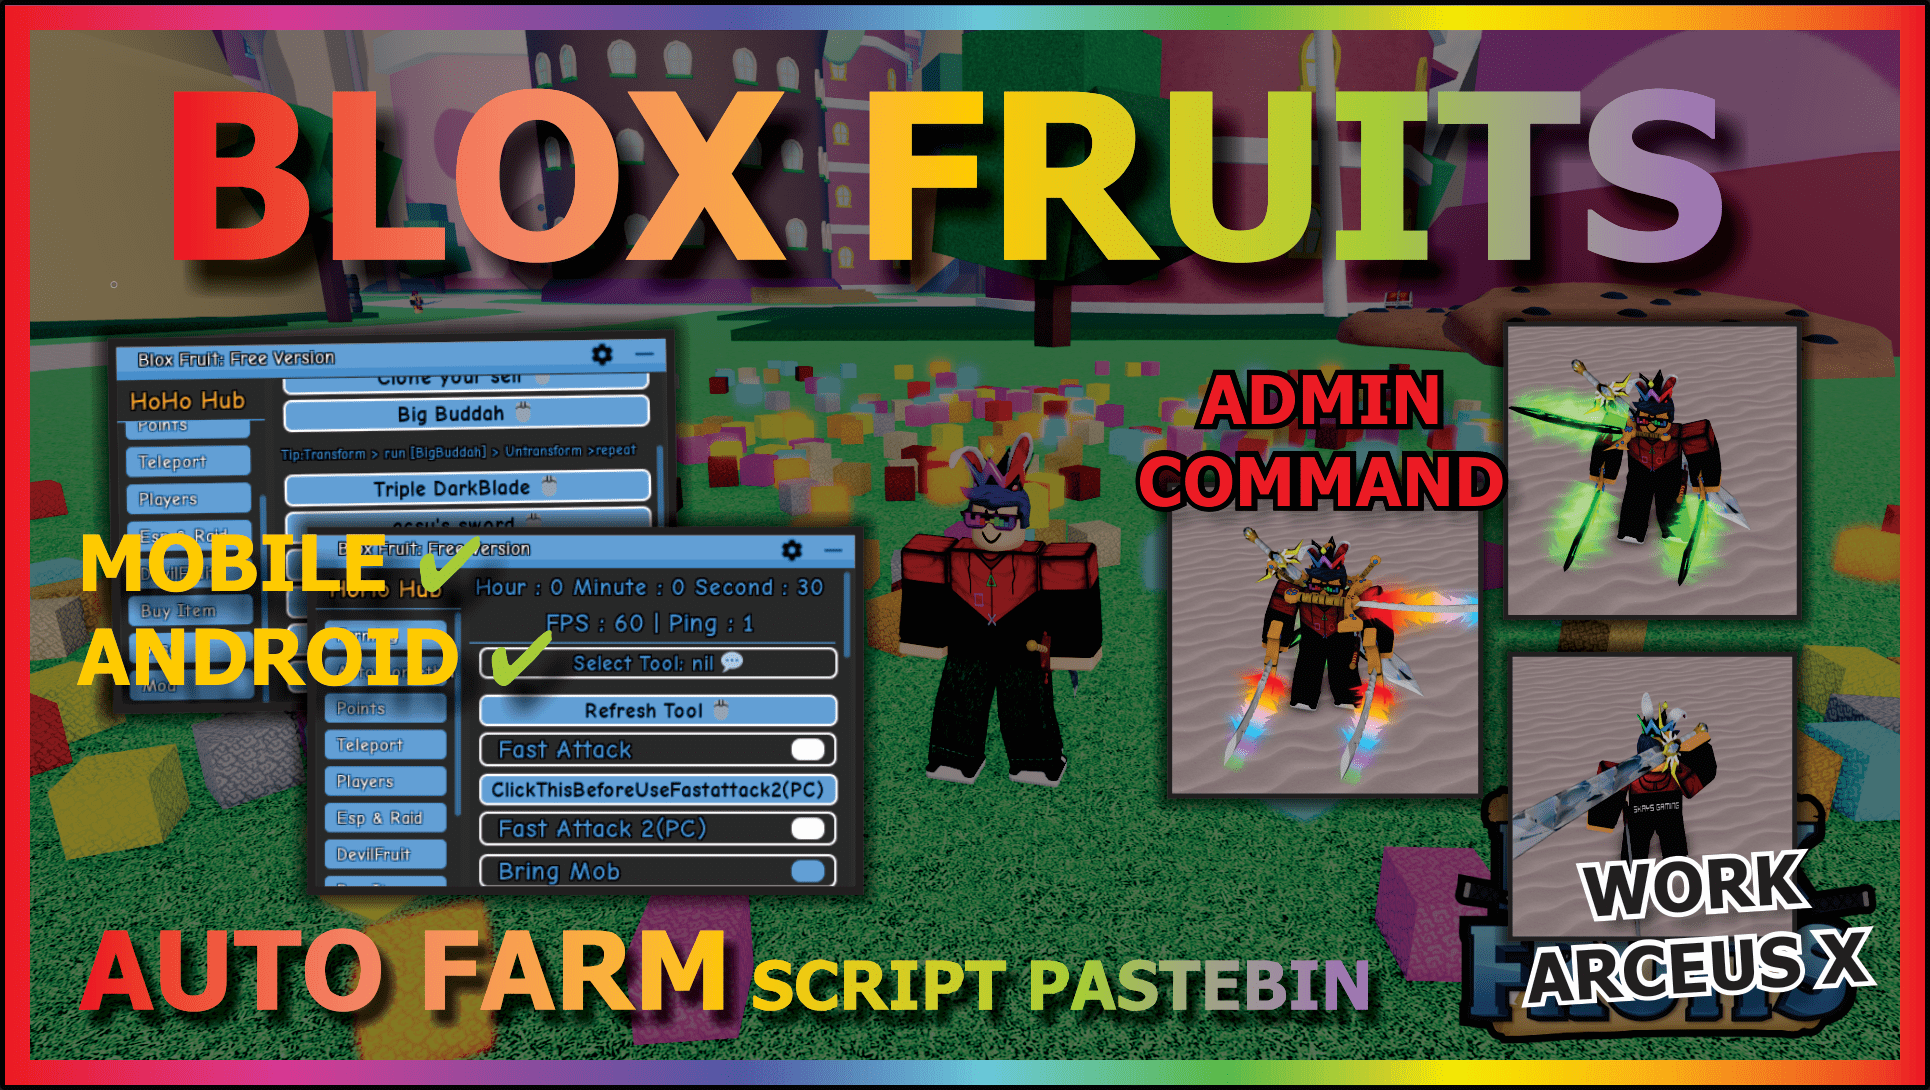 Best Blox Fruits Script - Farming, Teleports, Visuals & More